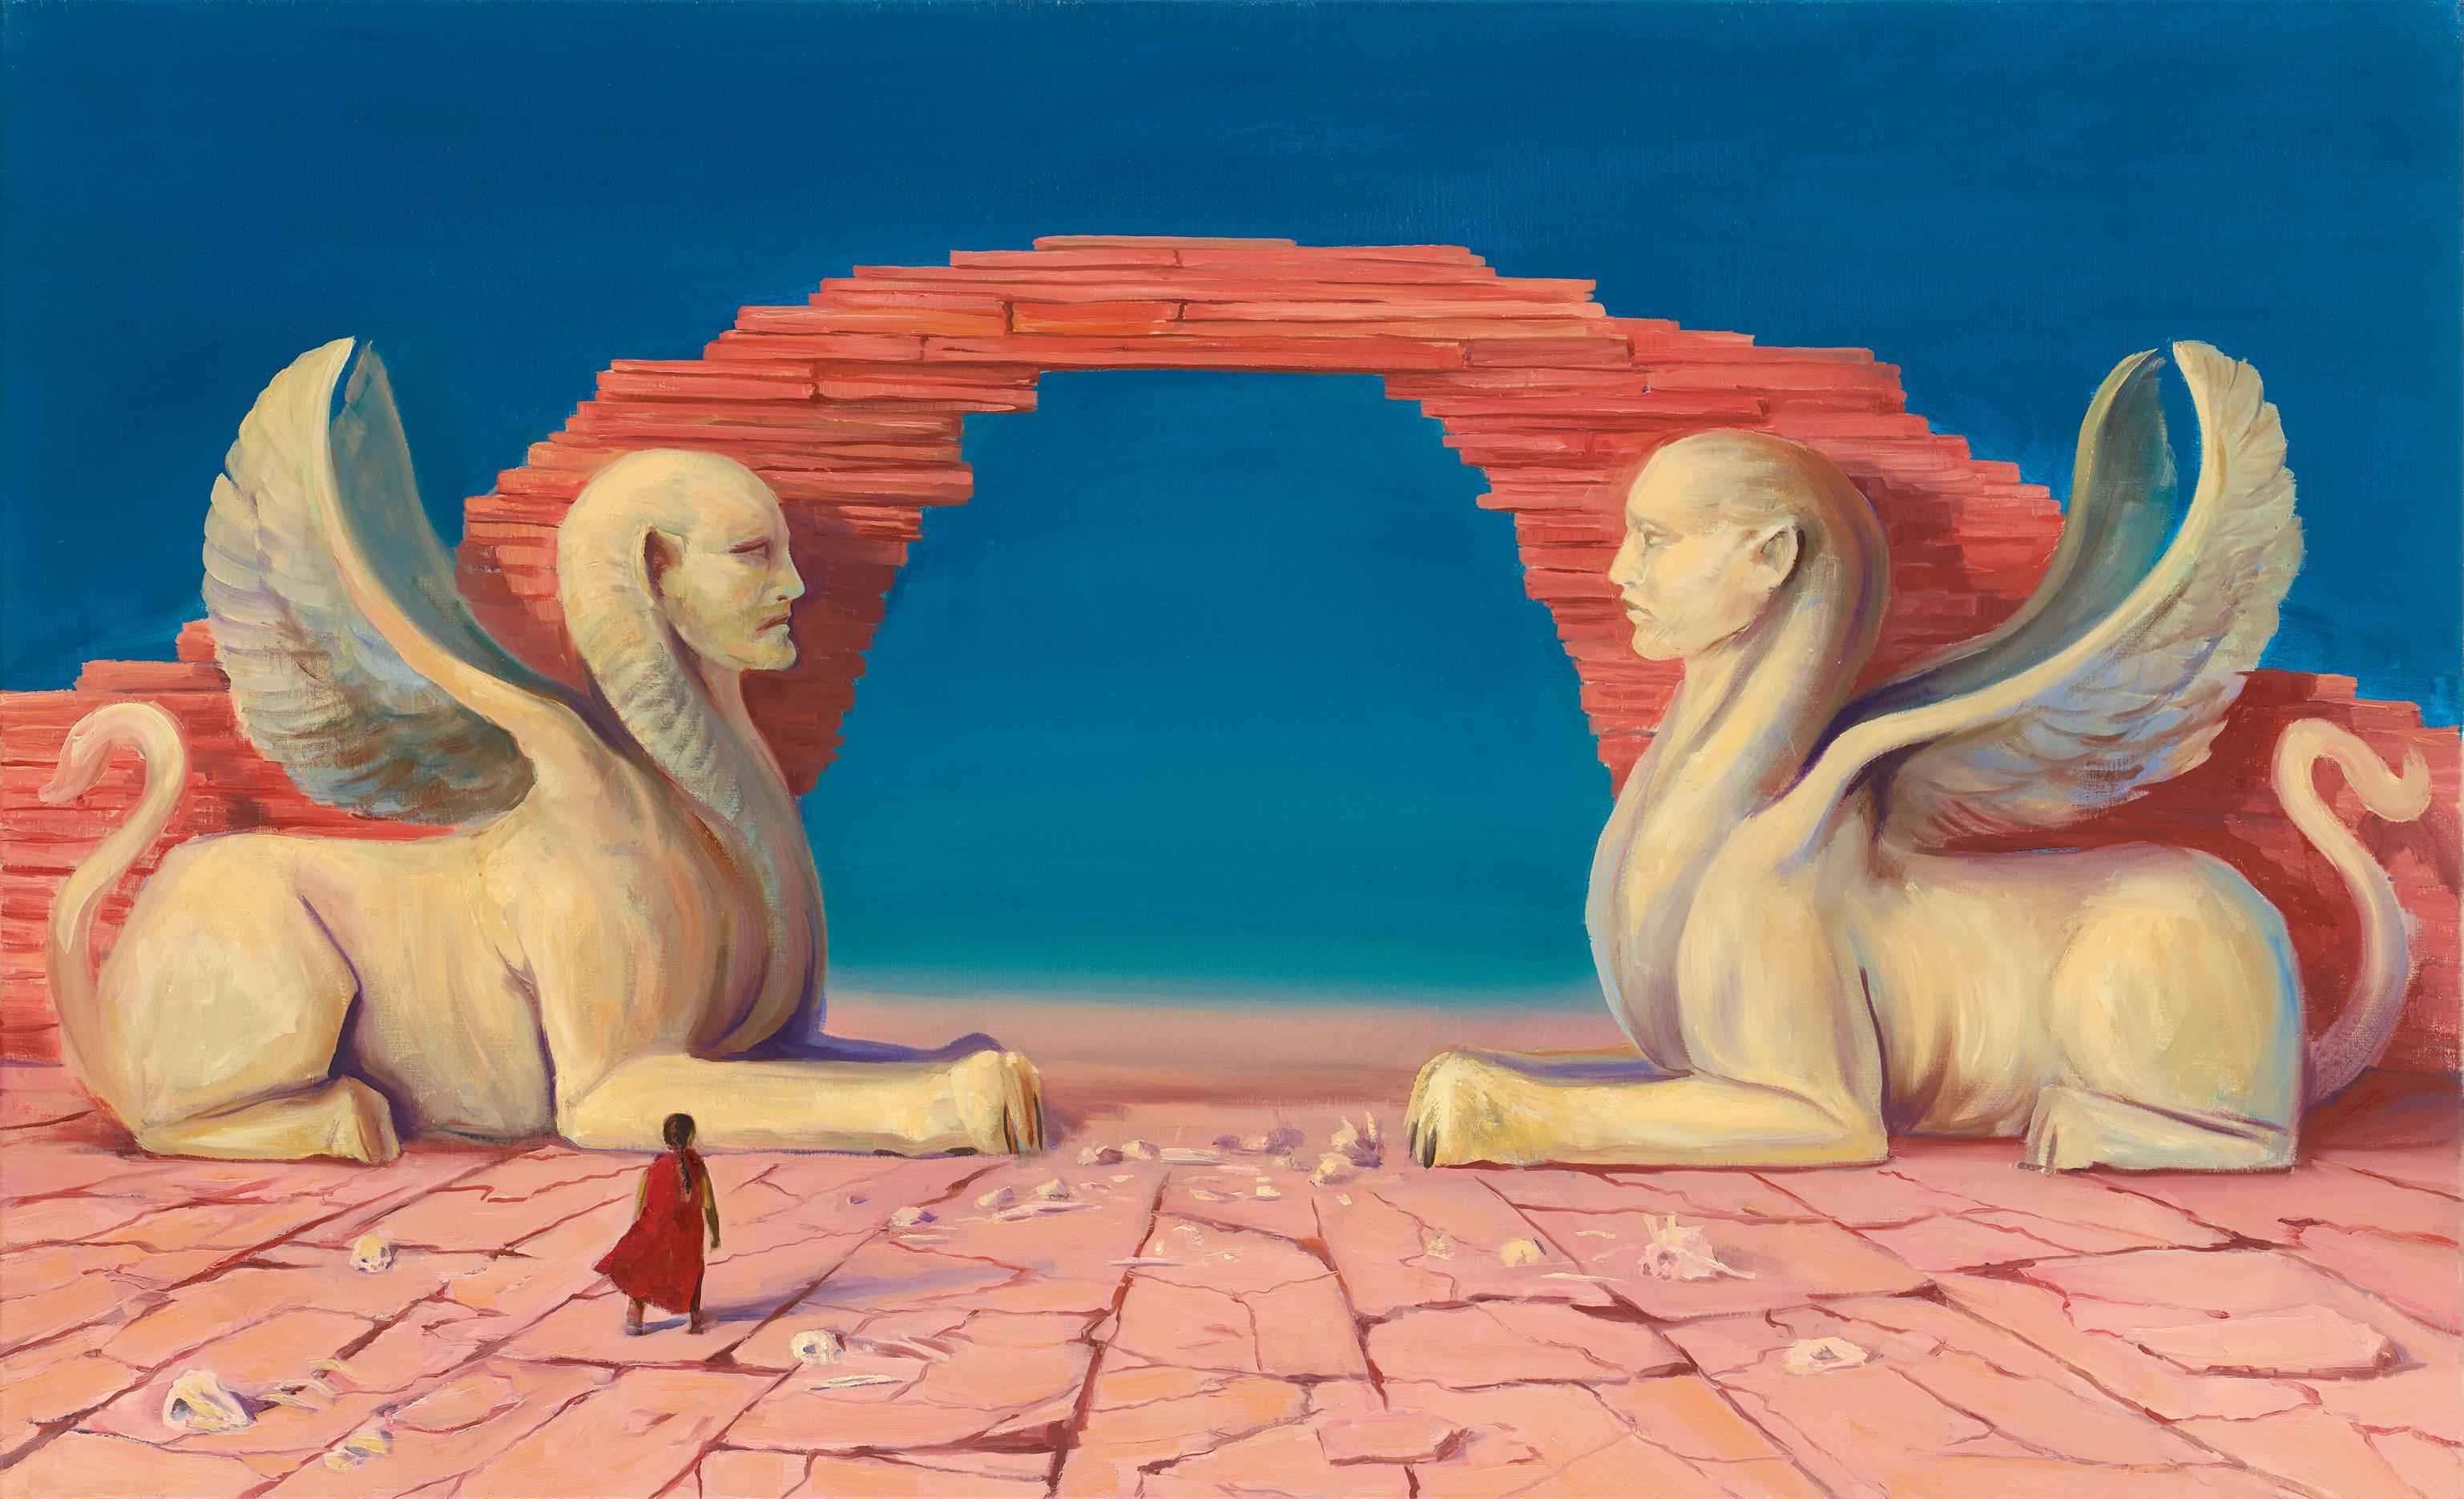 Zwei weiße Sphinxen (geflügelte Löwinnen mit Menschengesichtern) bewachen ein Tor aus übereinander liegenden Felsen. Sie sitzen sich gegenüber. Der Held Atreju muss zwischen ihnen durchgehen. Der Boden um ihn herum ist übersät mit Knochen.